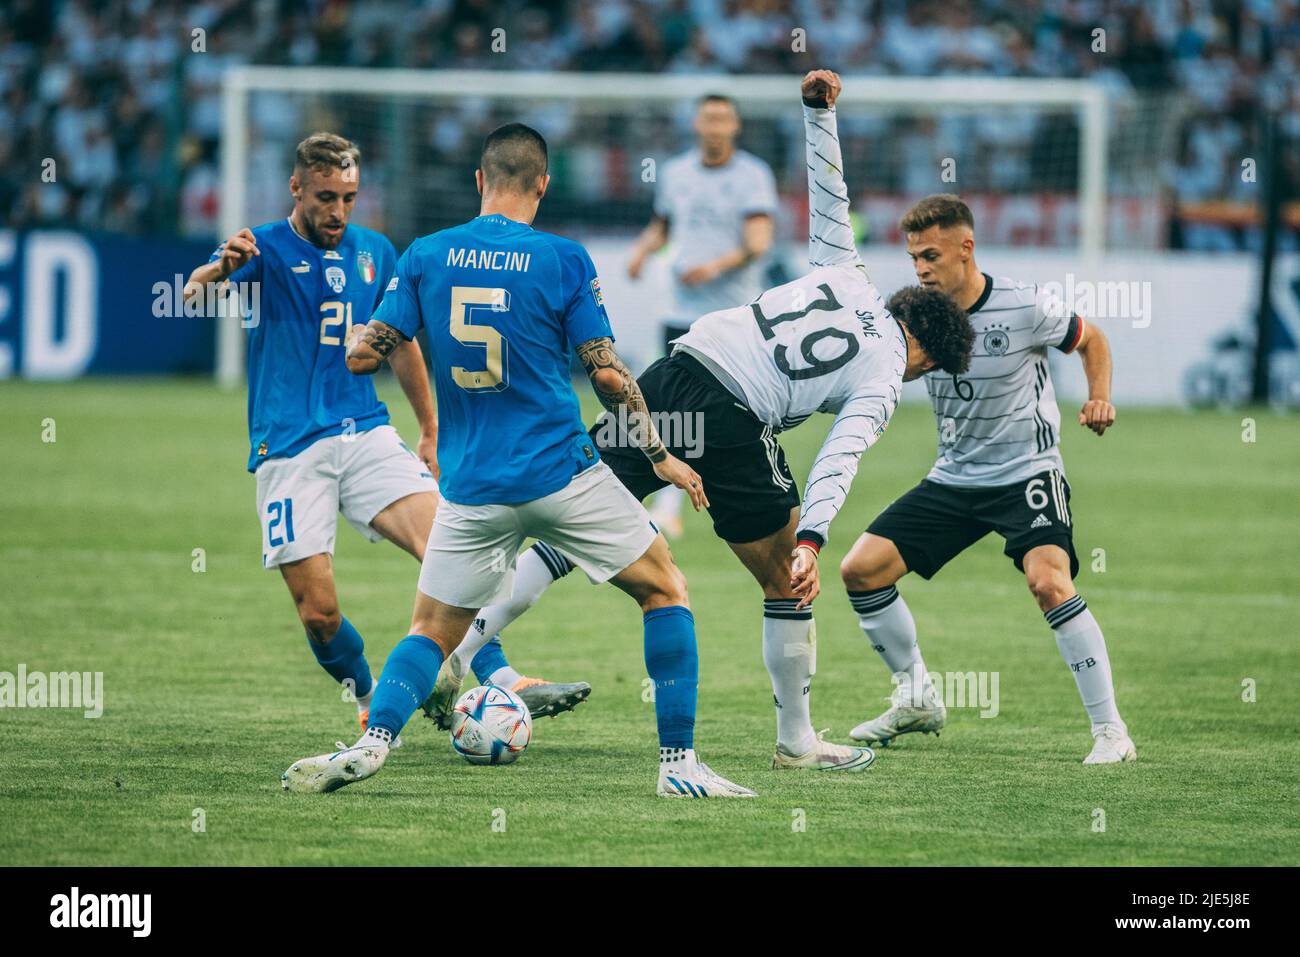 Mönchengladbach, Borussia-Park, 14.06.22: Gianluca Mancini (L) (Italy) gegen Leroy Sane (R) (Germany) beim Länderspiel zwischen Deutschland vs. Italie Stock Photo